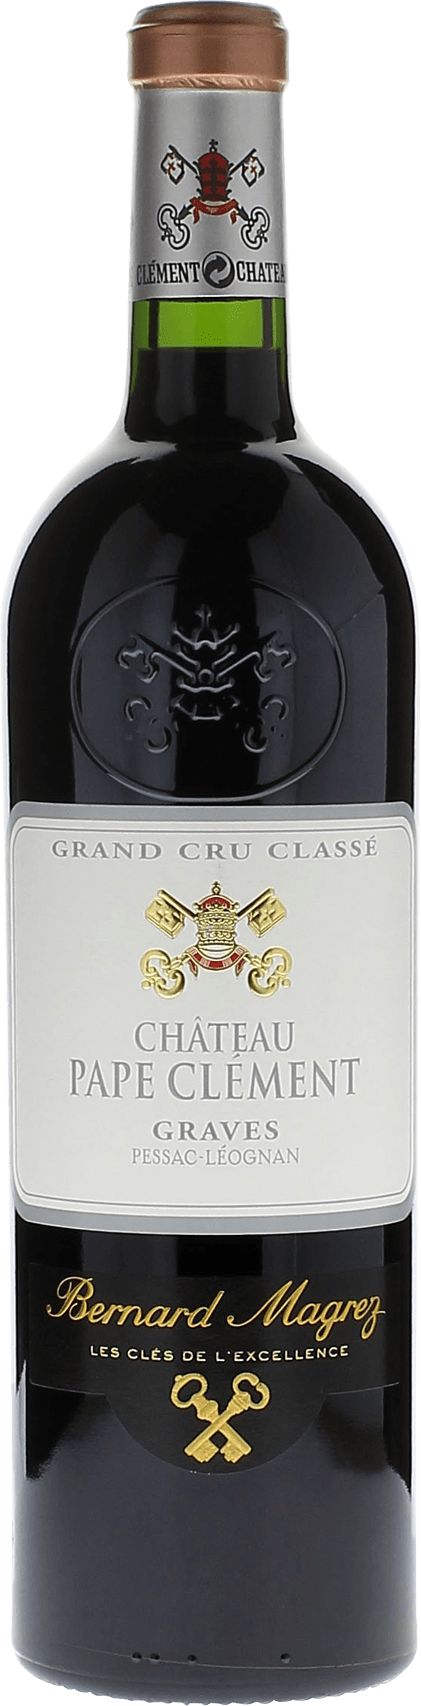 Pape clement rouge 1993 Grand Cru Class Graves, Bordeaux rouge